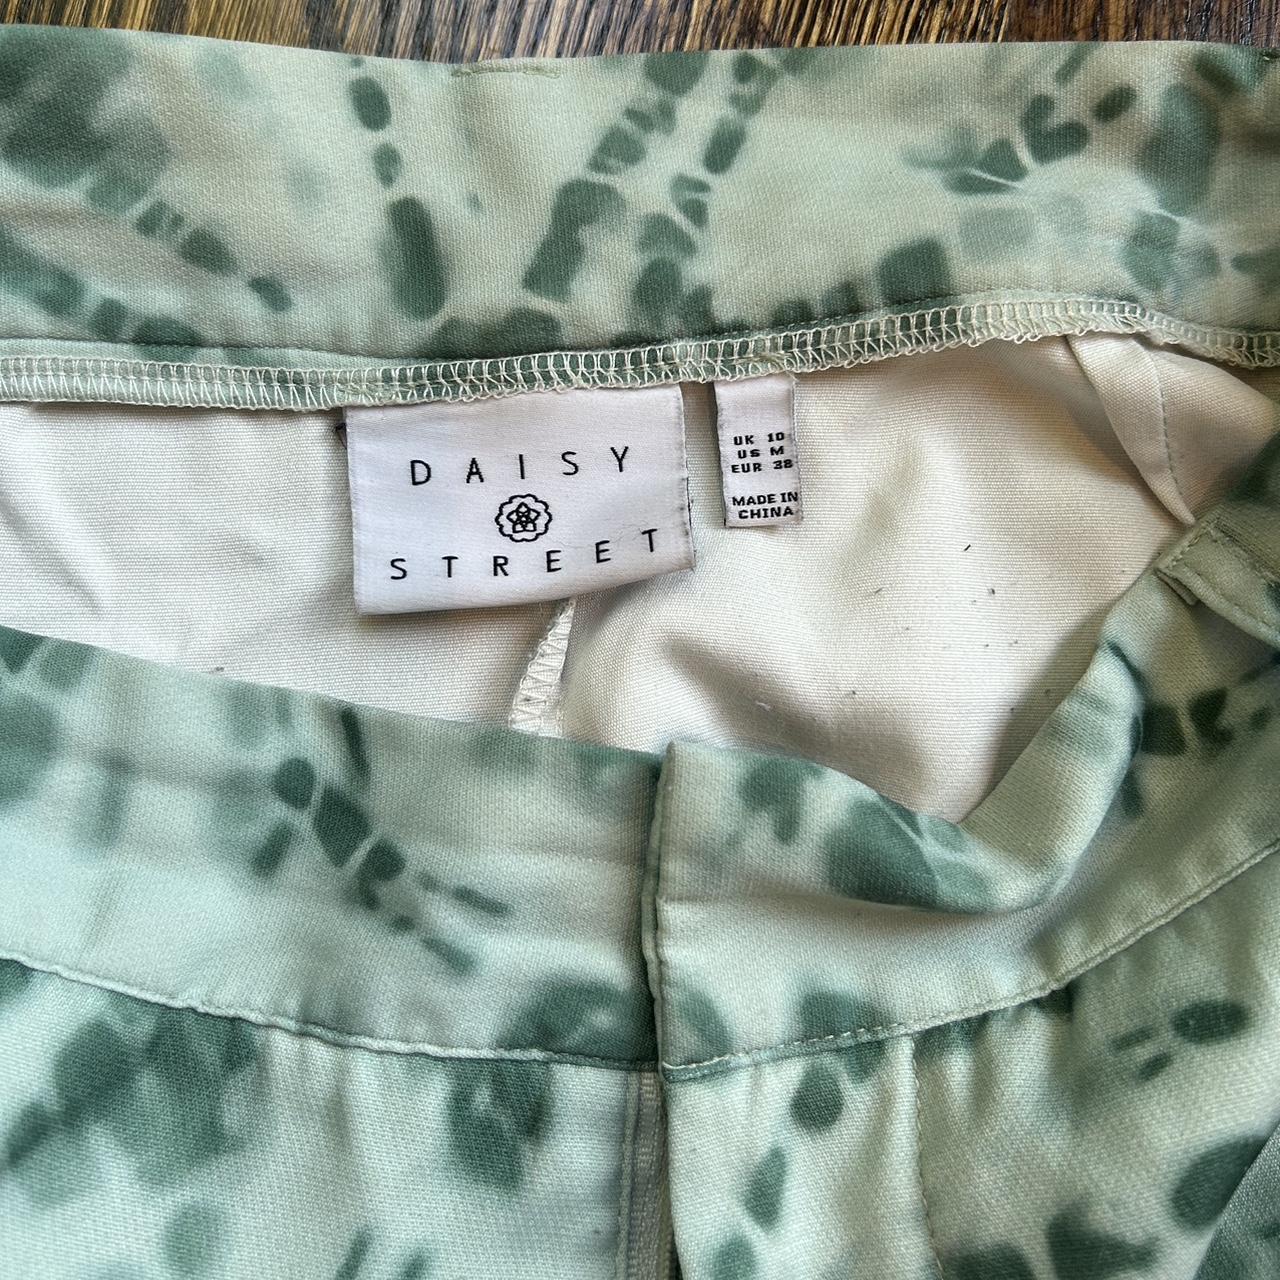 Daisy Street Women's Trousers (2)